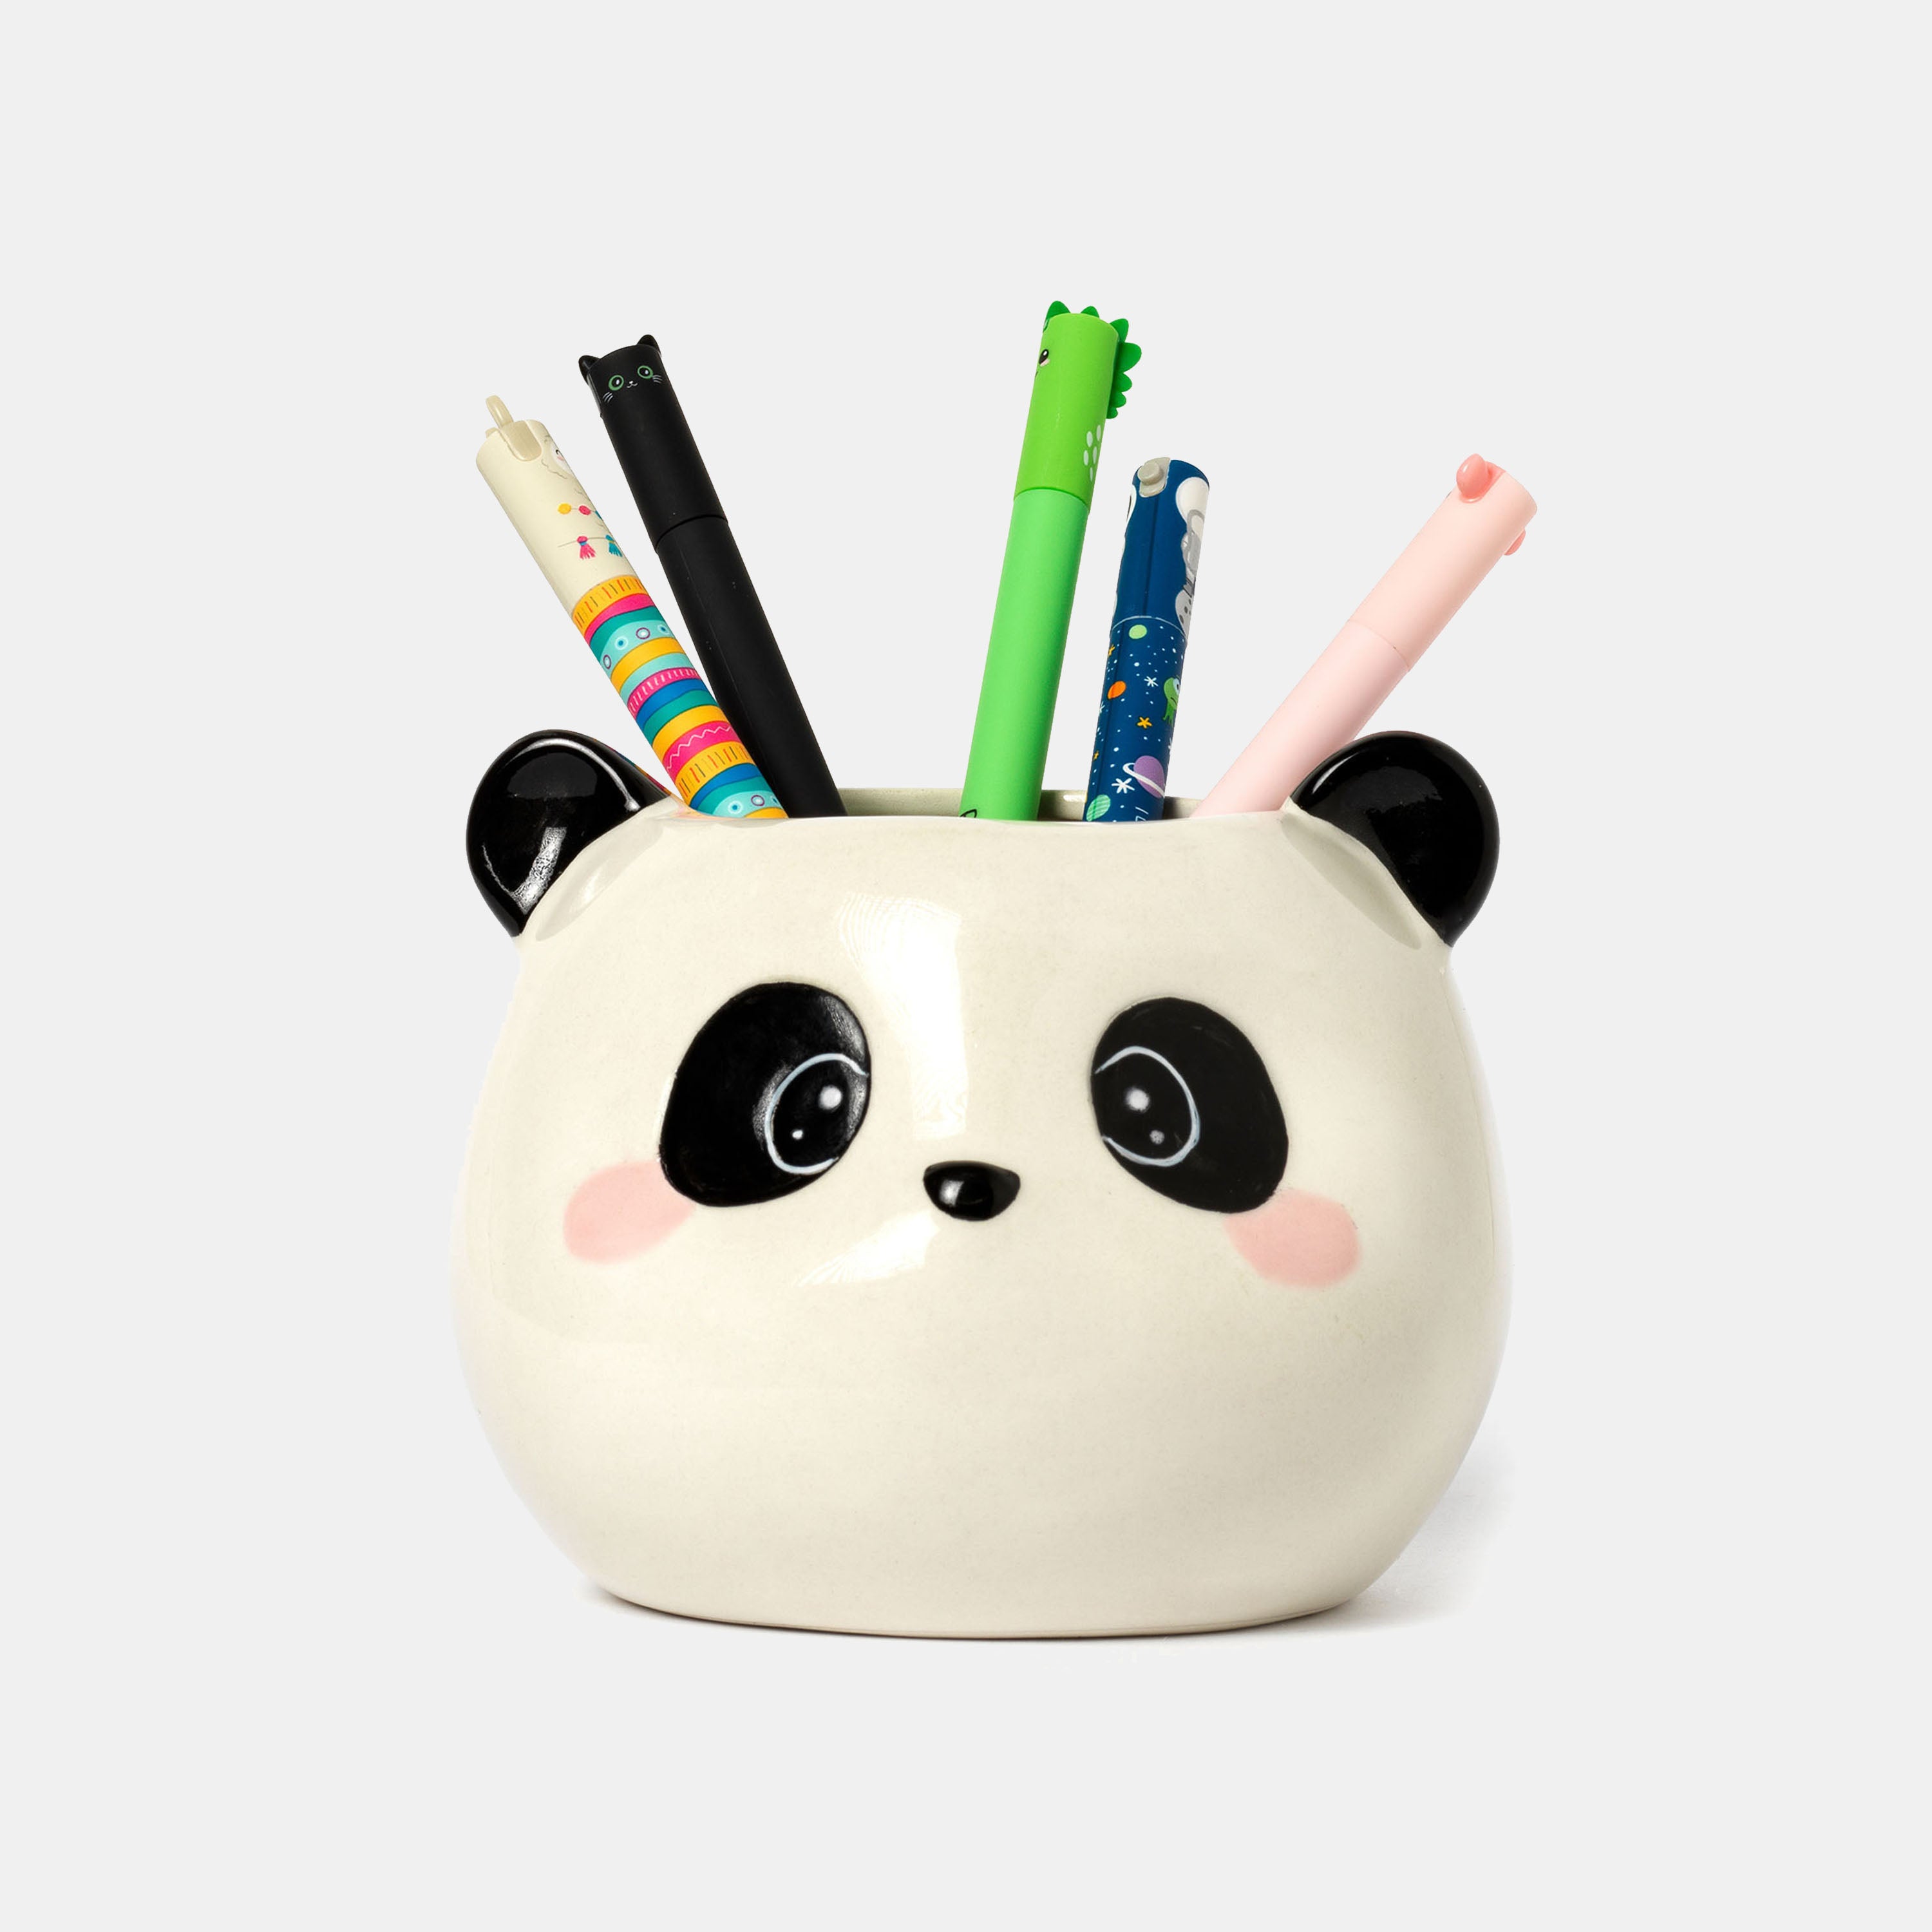 Stick de colle Panda - Hug me - Legami – L'Art du Papier Paris